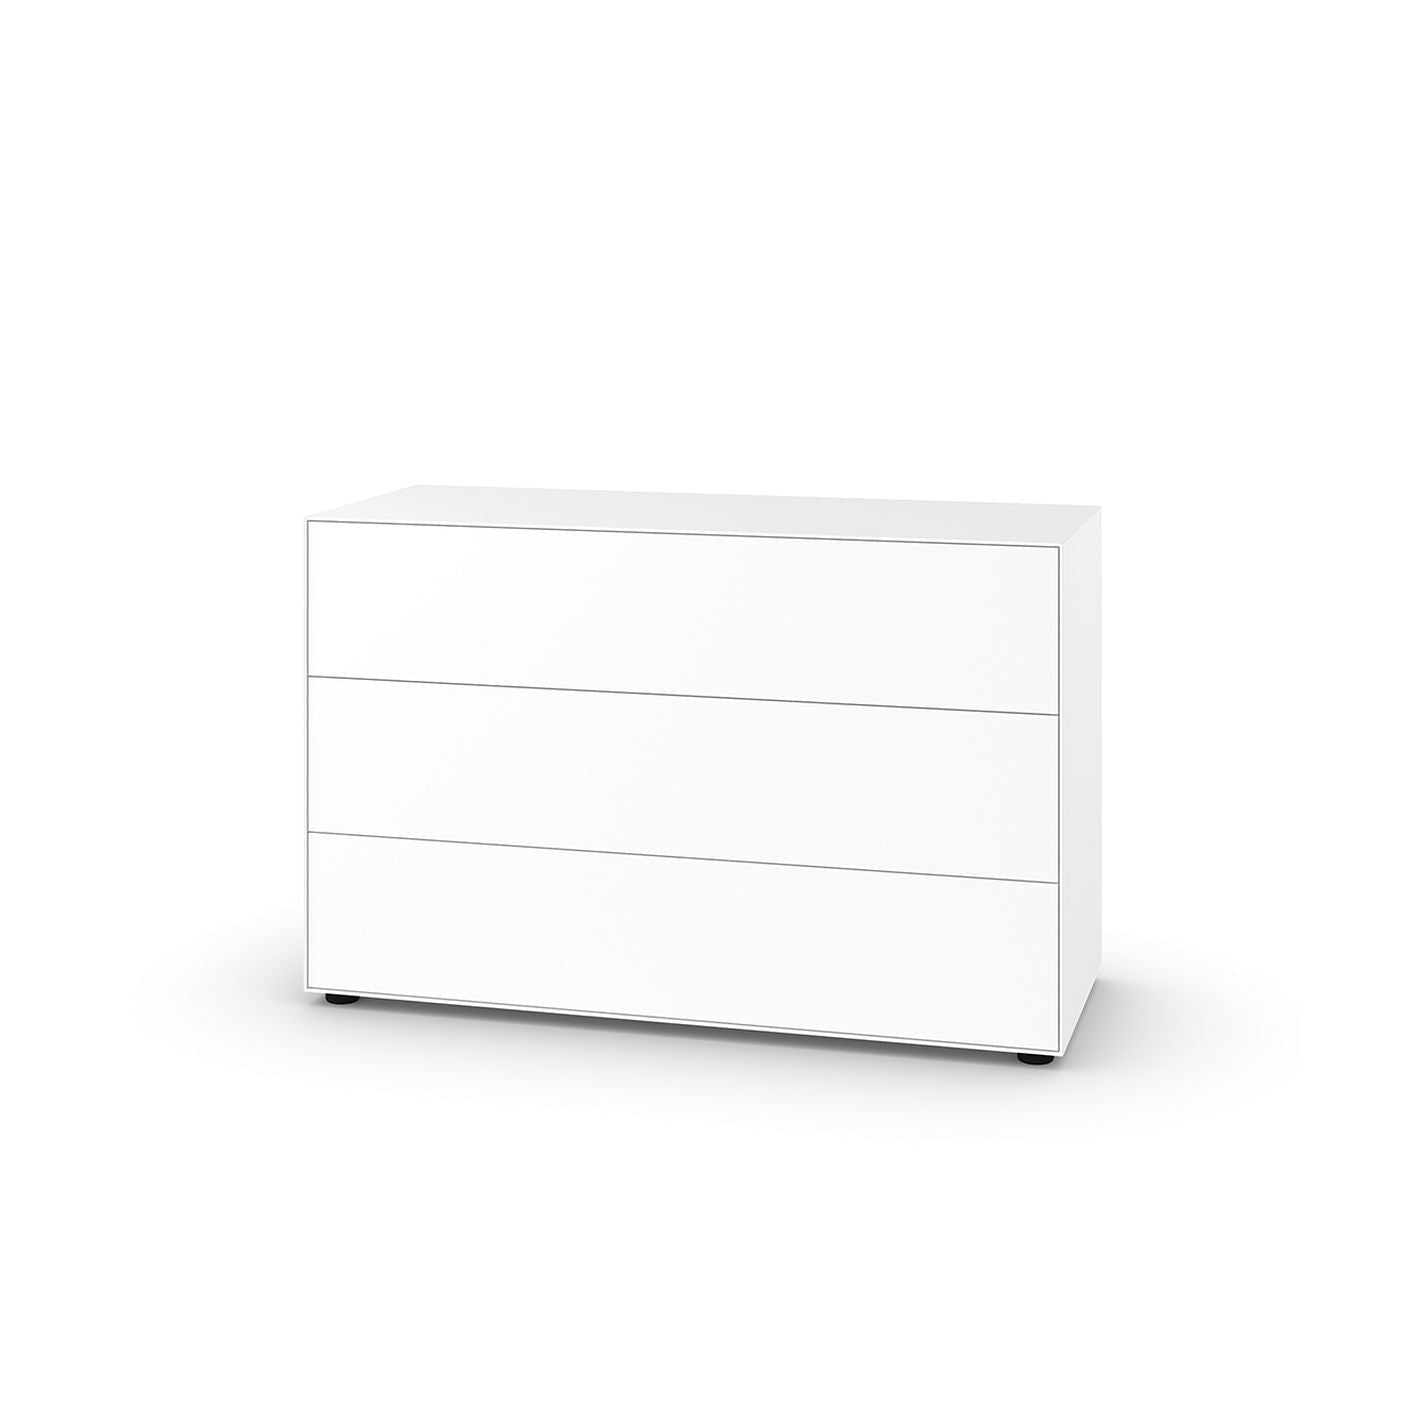 Piure Nex Pur Box Hx W 75x120 cm, 3 szuflady, białe